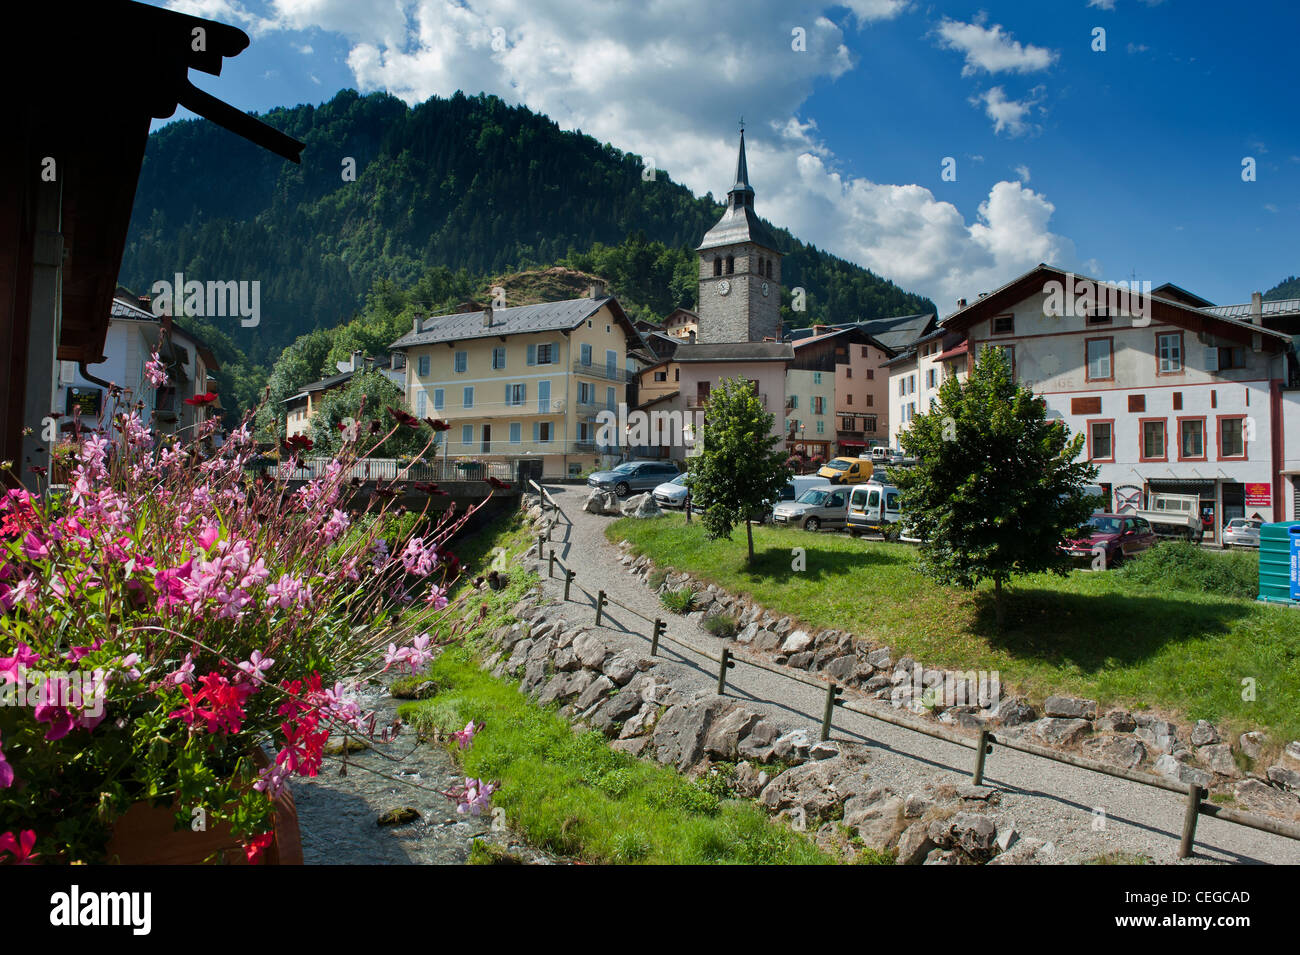 Doron fluvial en el municipio de Beaufort. Departamento de Savoie región Ródano-Alpes Francia Foto de stock